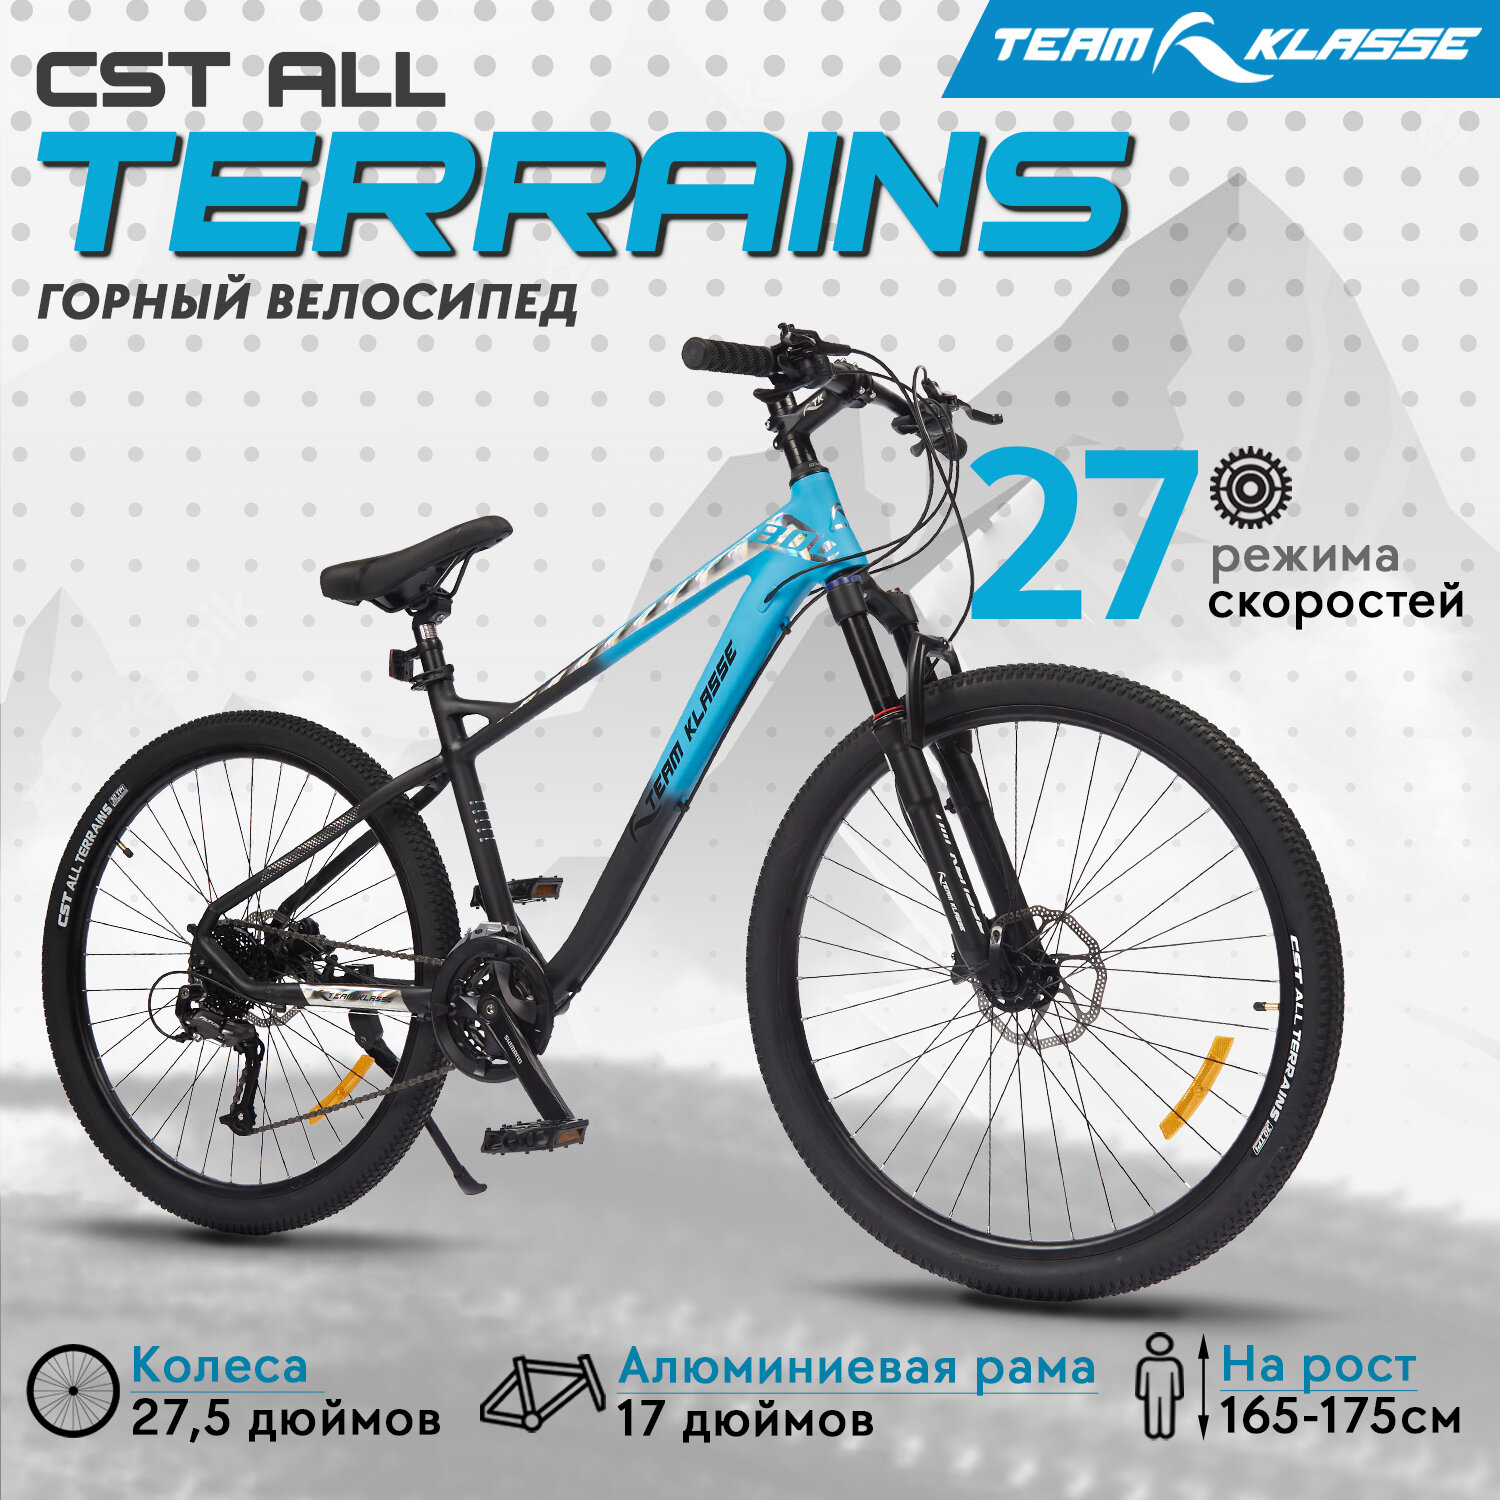 Горный велосипед Team Klasse YT27 голубой, черный 27,5"